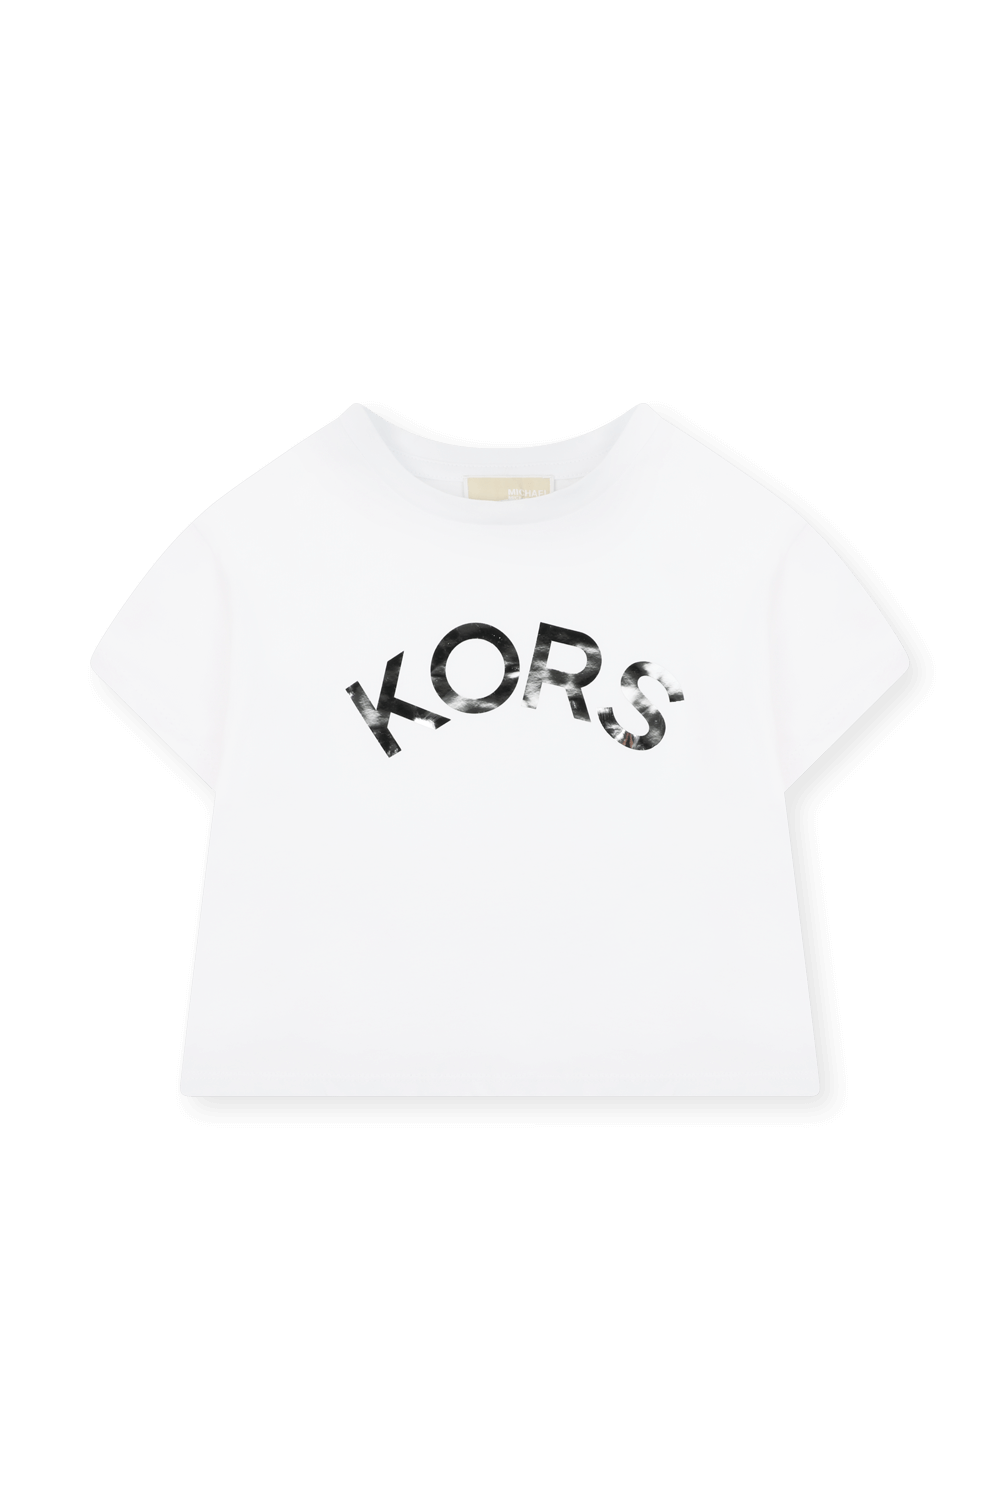 חולצת טי עם הדפס - גילאי 2-5 MICHAEL KORS KIDS